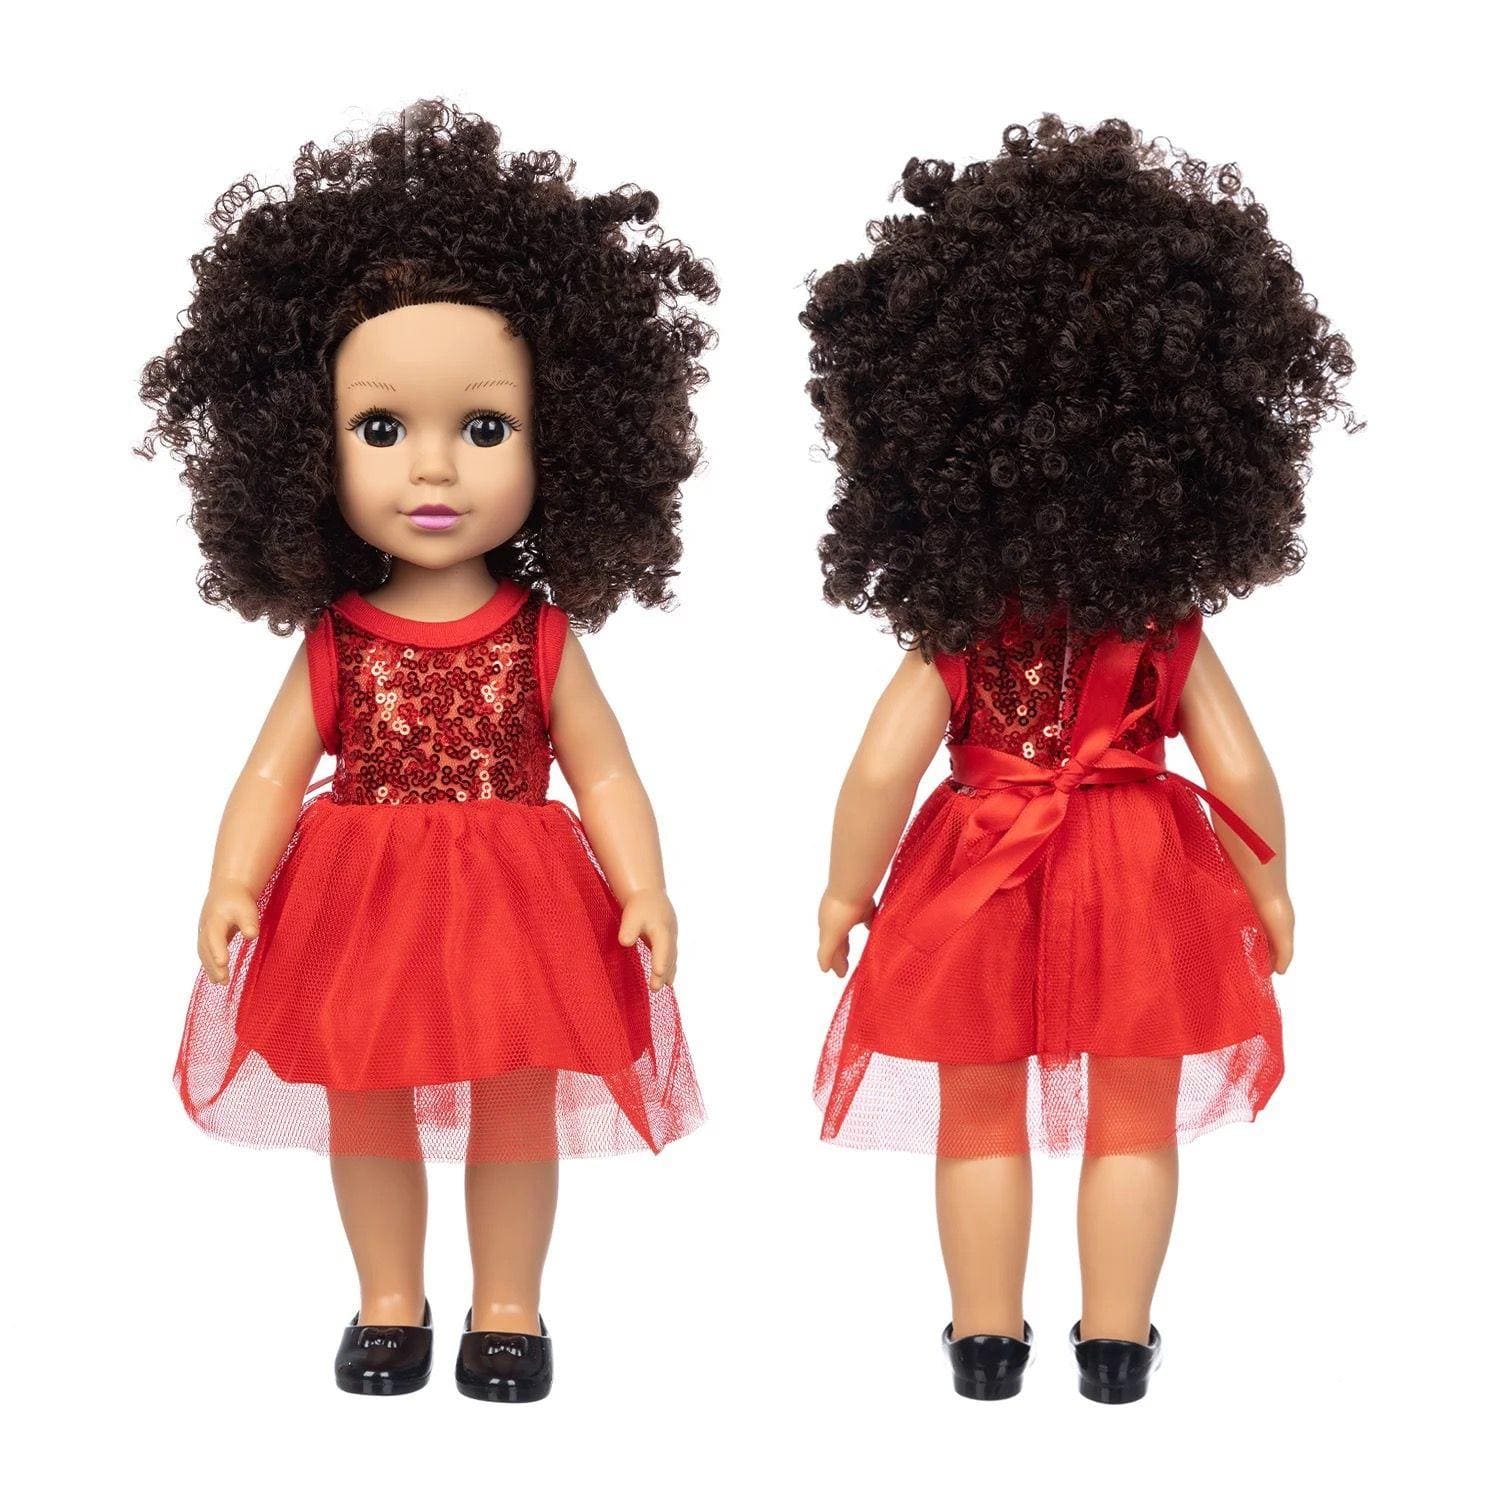 Petite poupée fille en plastique pour enfant, robe rouge, peau blanche et cheveux crépus